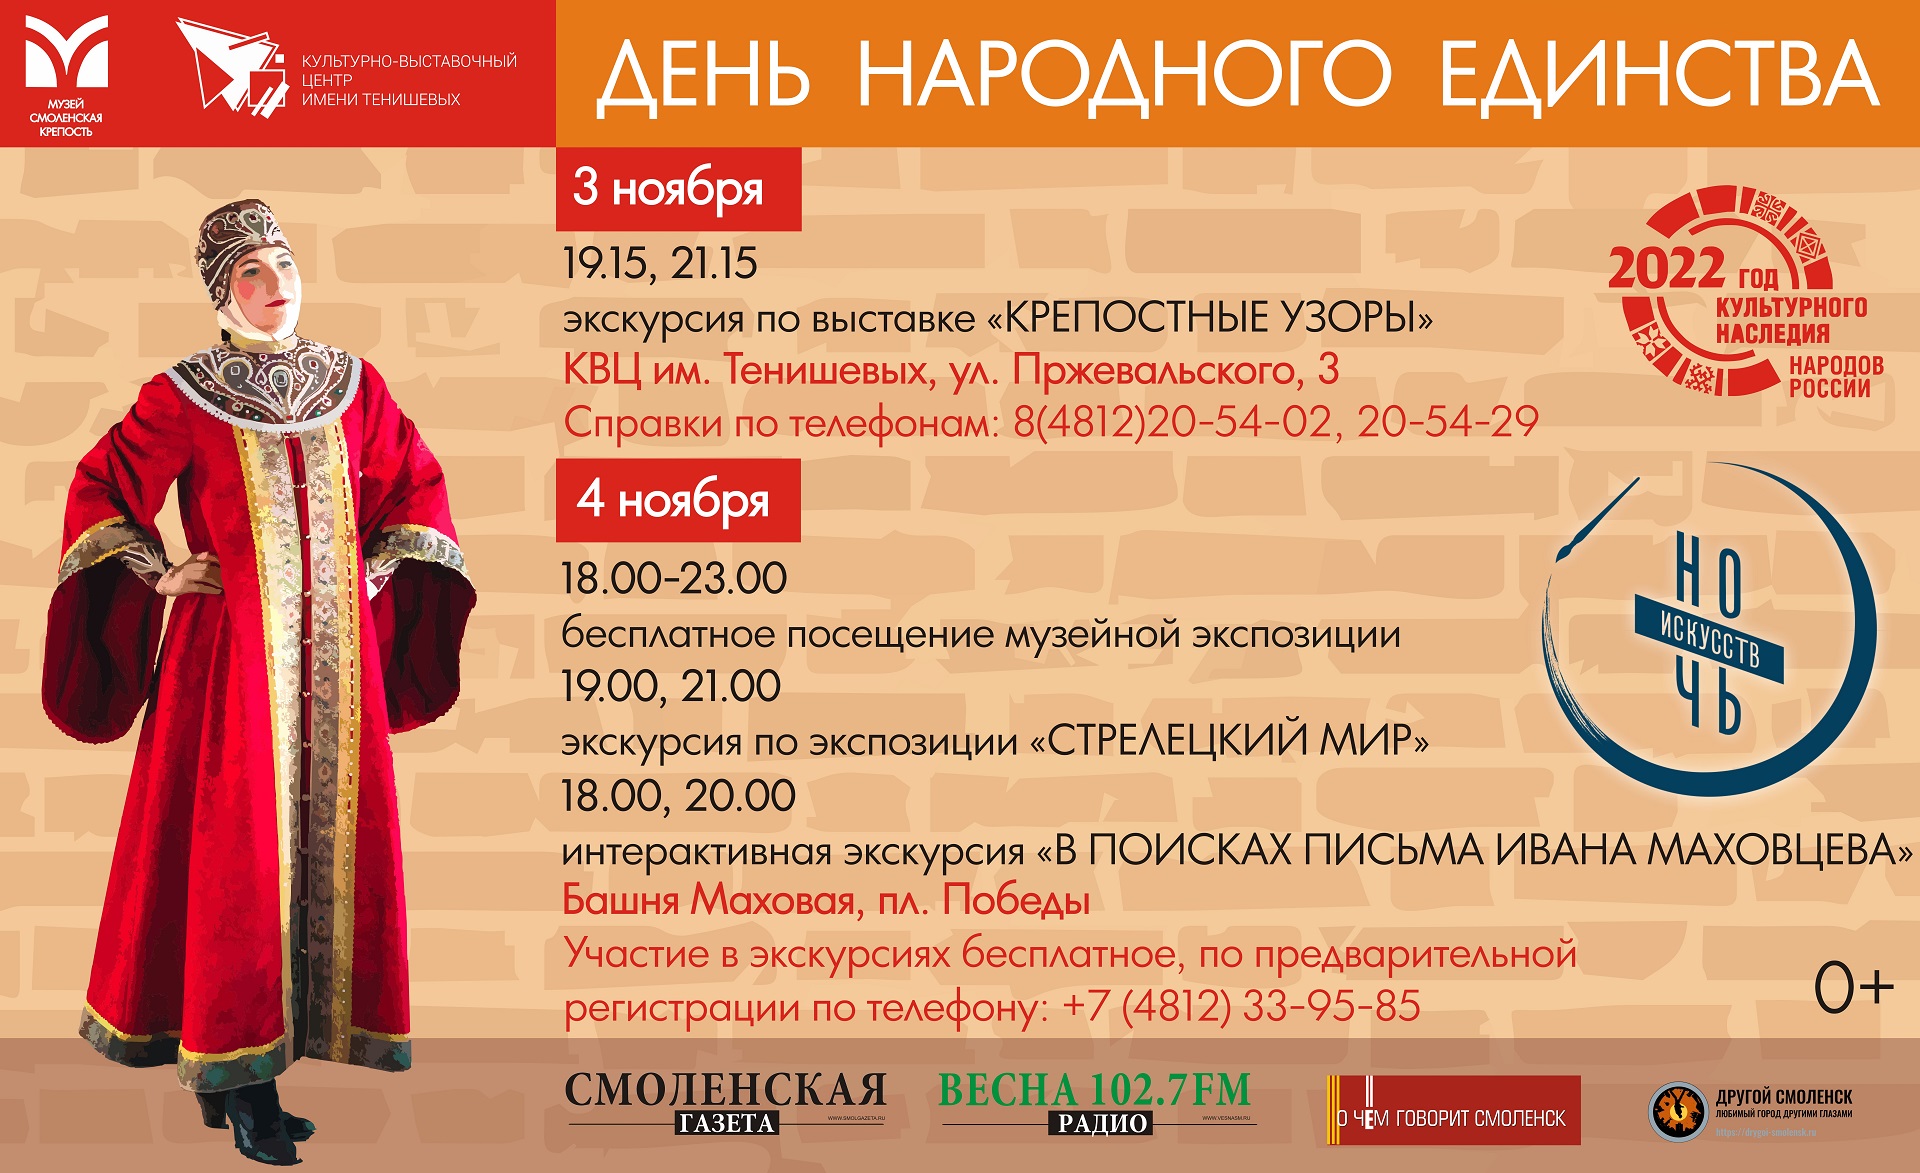 Государственный музей «Смоленская крепость» проведёт мероприятия, посвящённые Дню народного единства